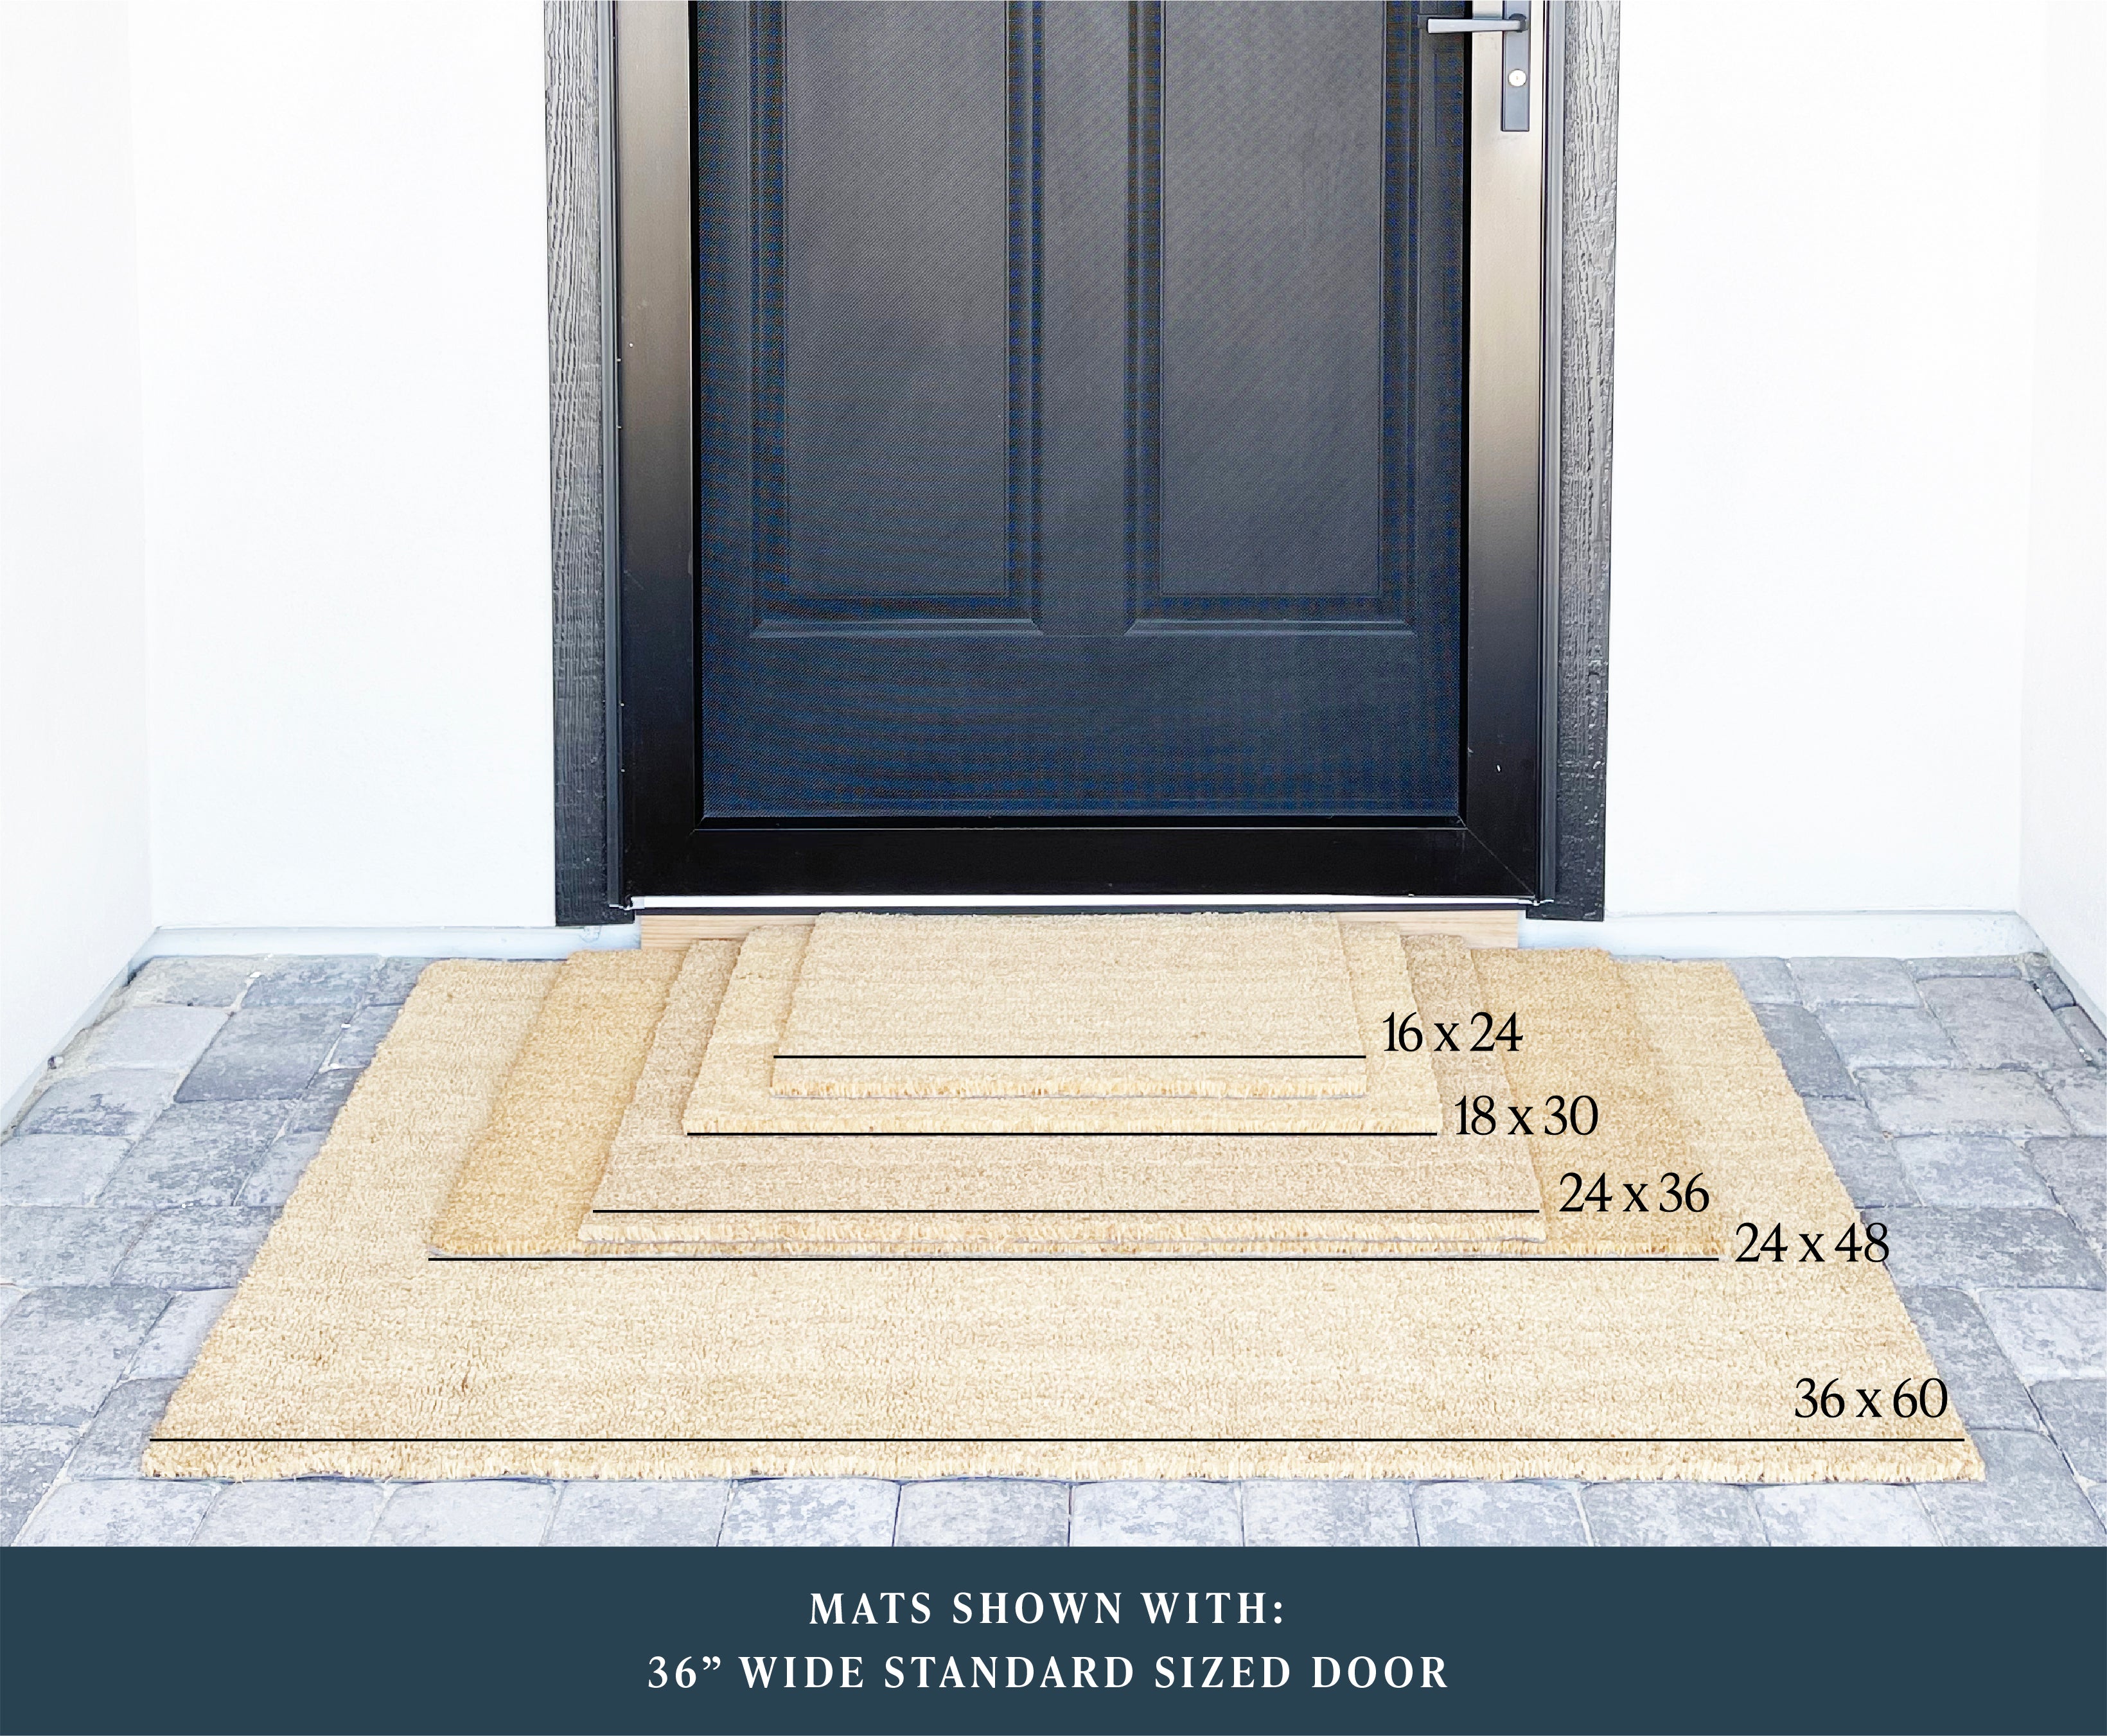 Open House Realtor Information Doormat